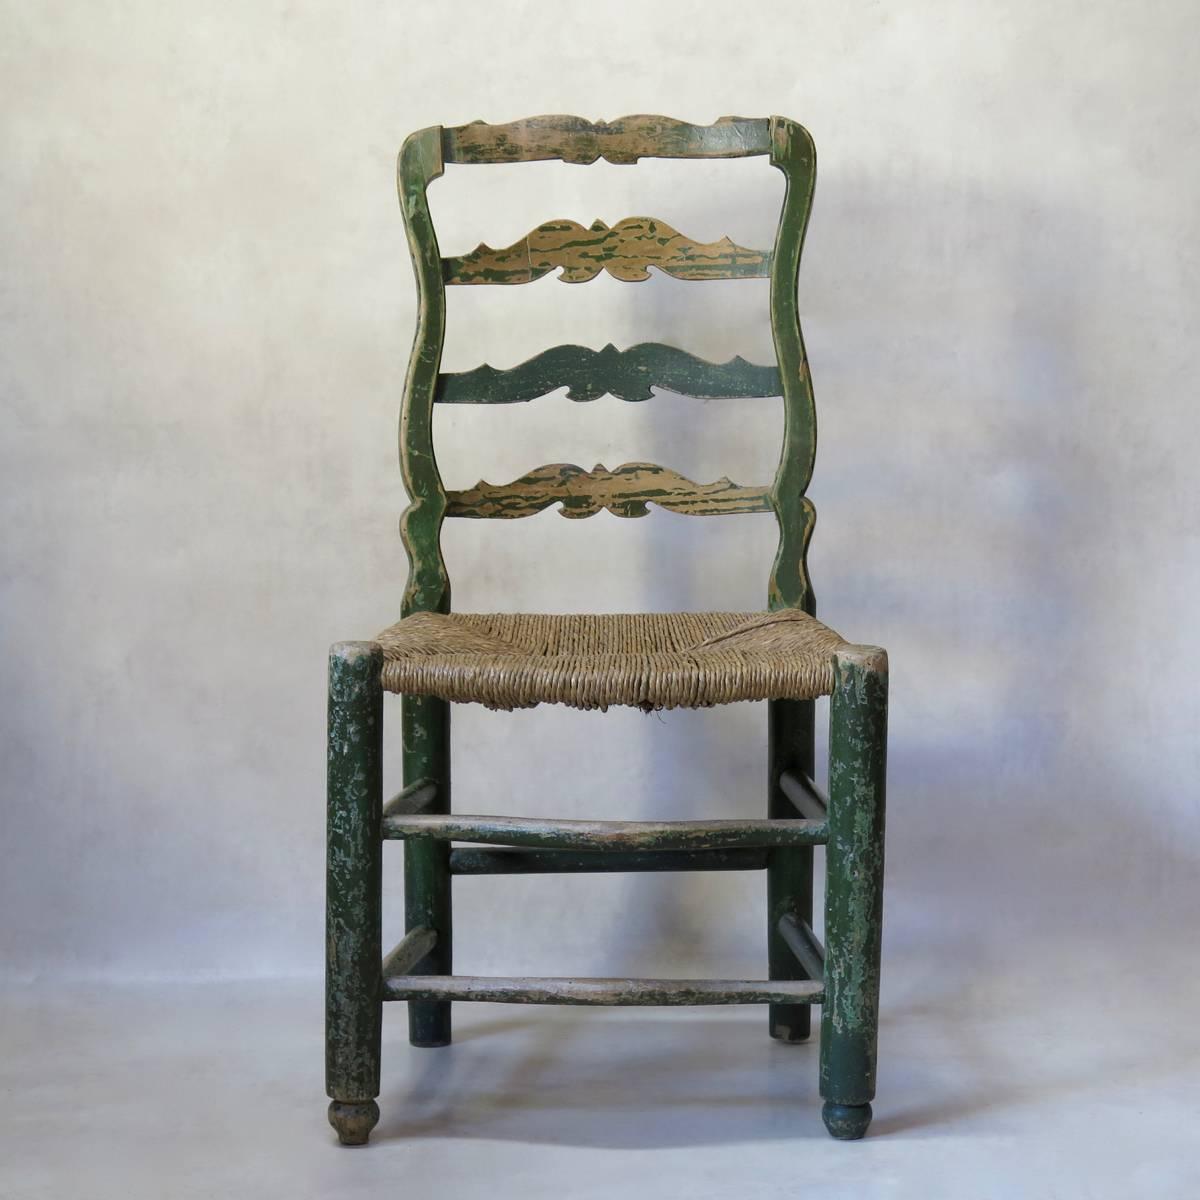 Bel ensemble de quatre chaises anciennes en hêtre, avec peinture verte d'origine, et sièges en jonc. Repose-pieds avant élégamment incurvés. Large et confortable.